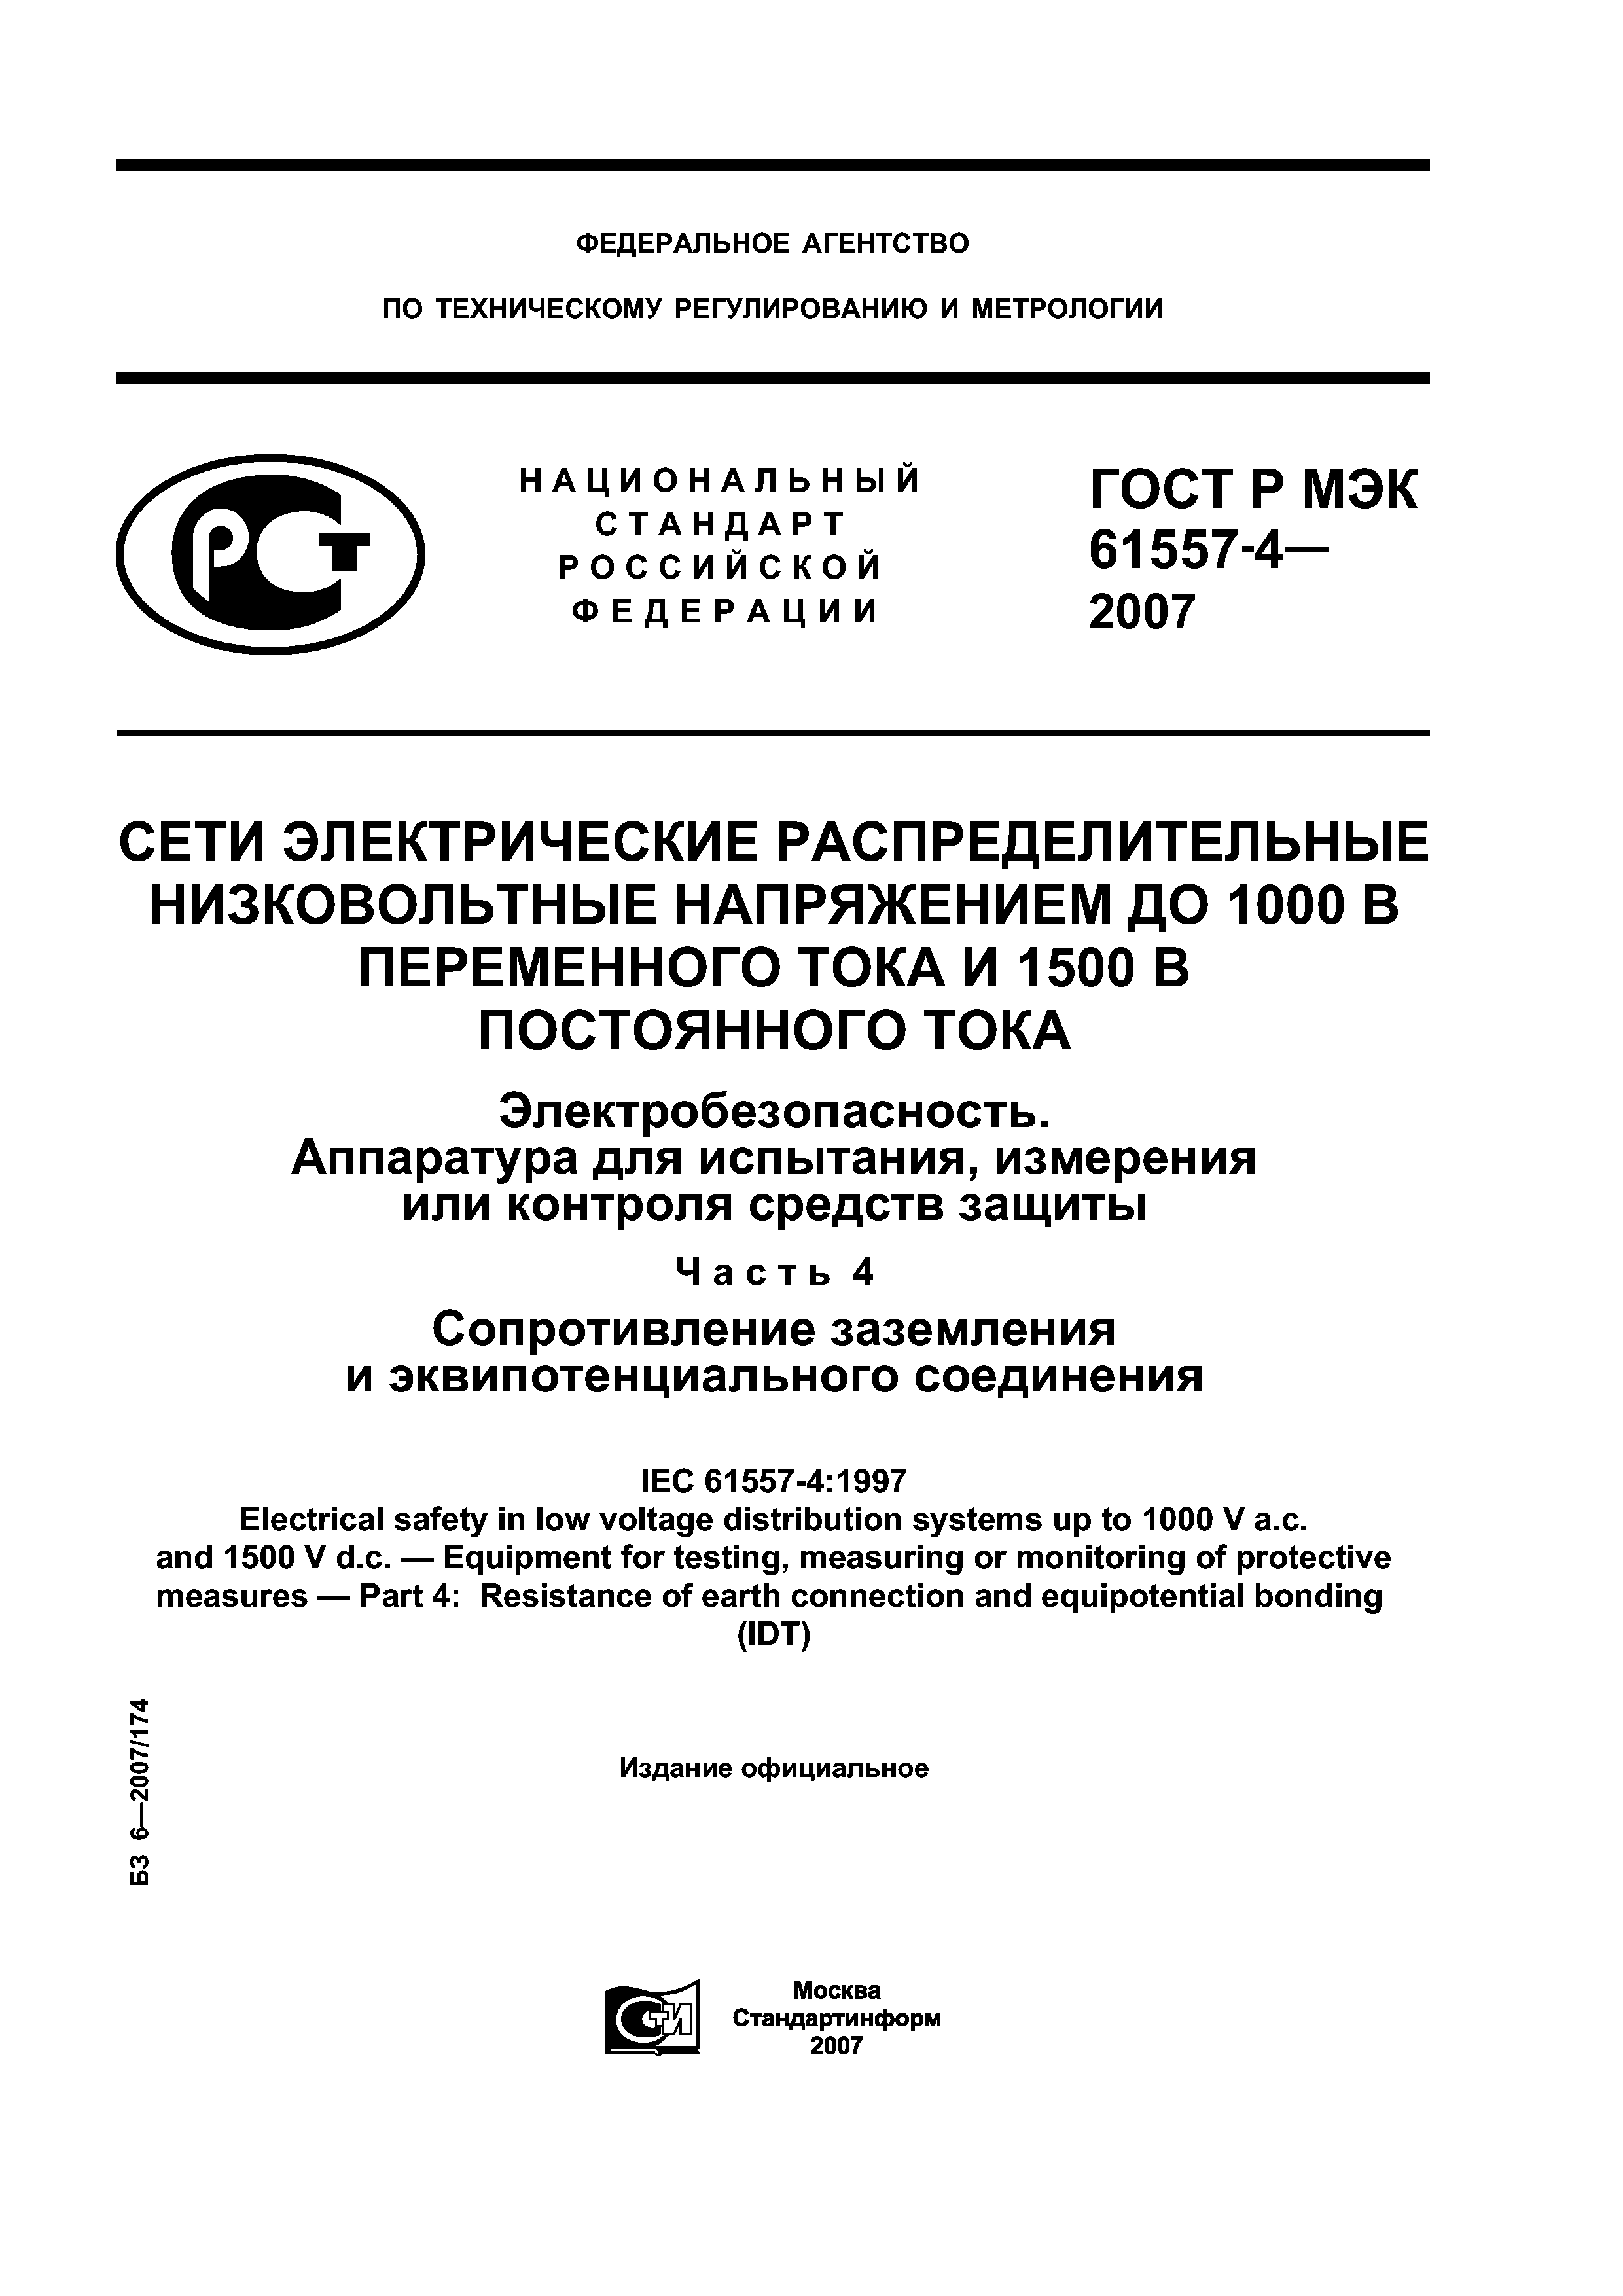 ГОСТ Р МЭК 61557-4-2007